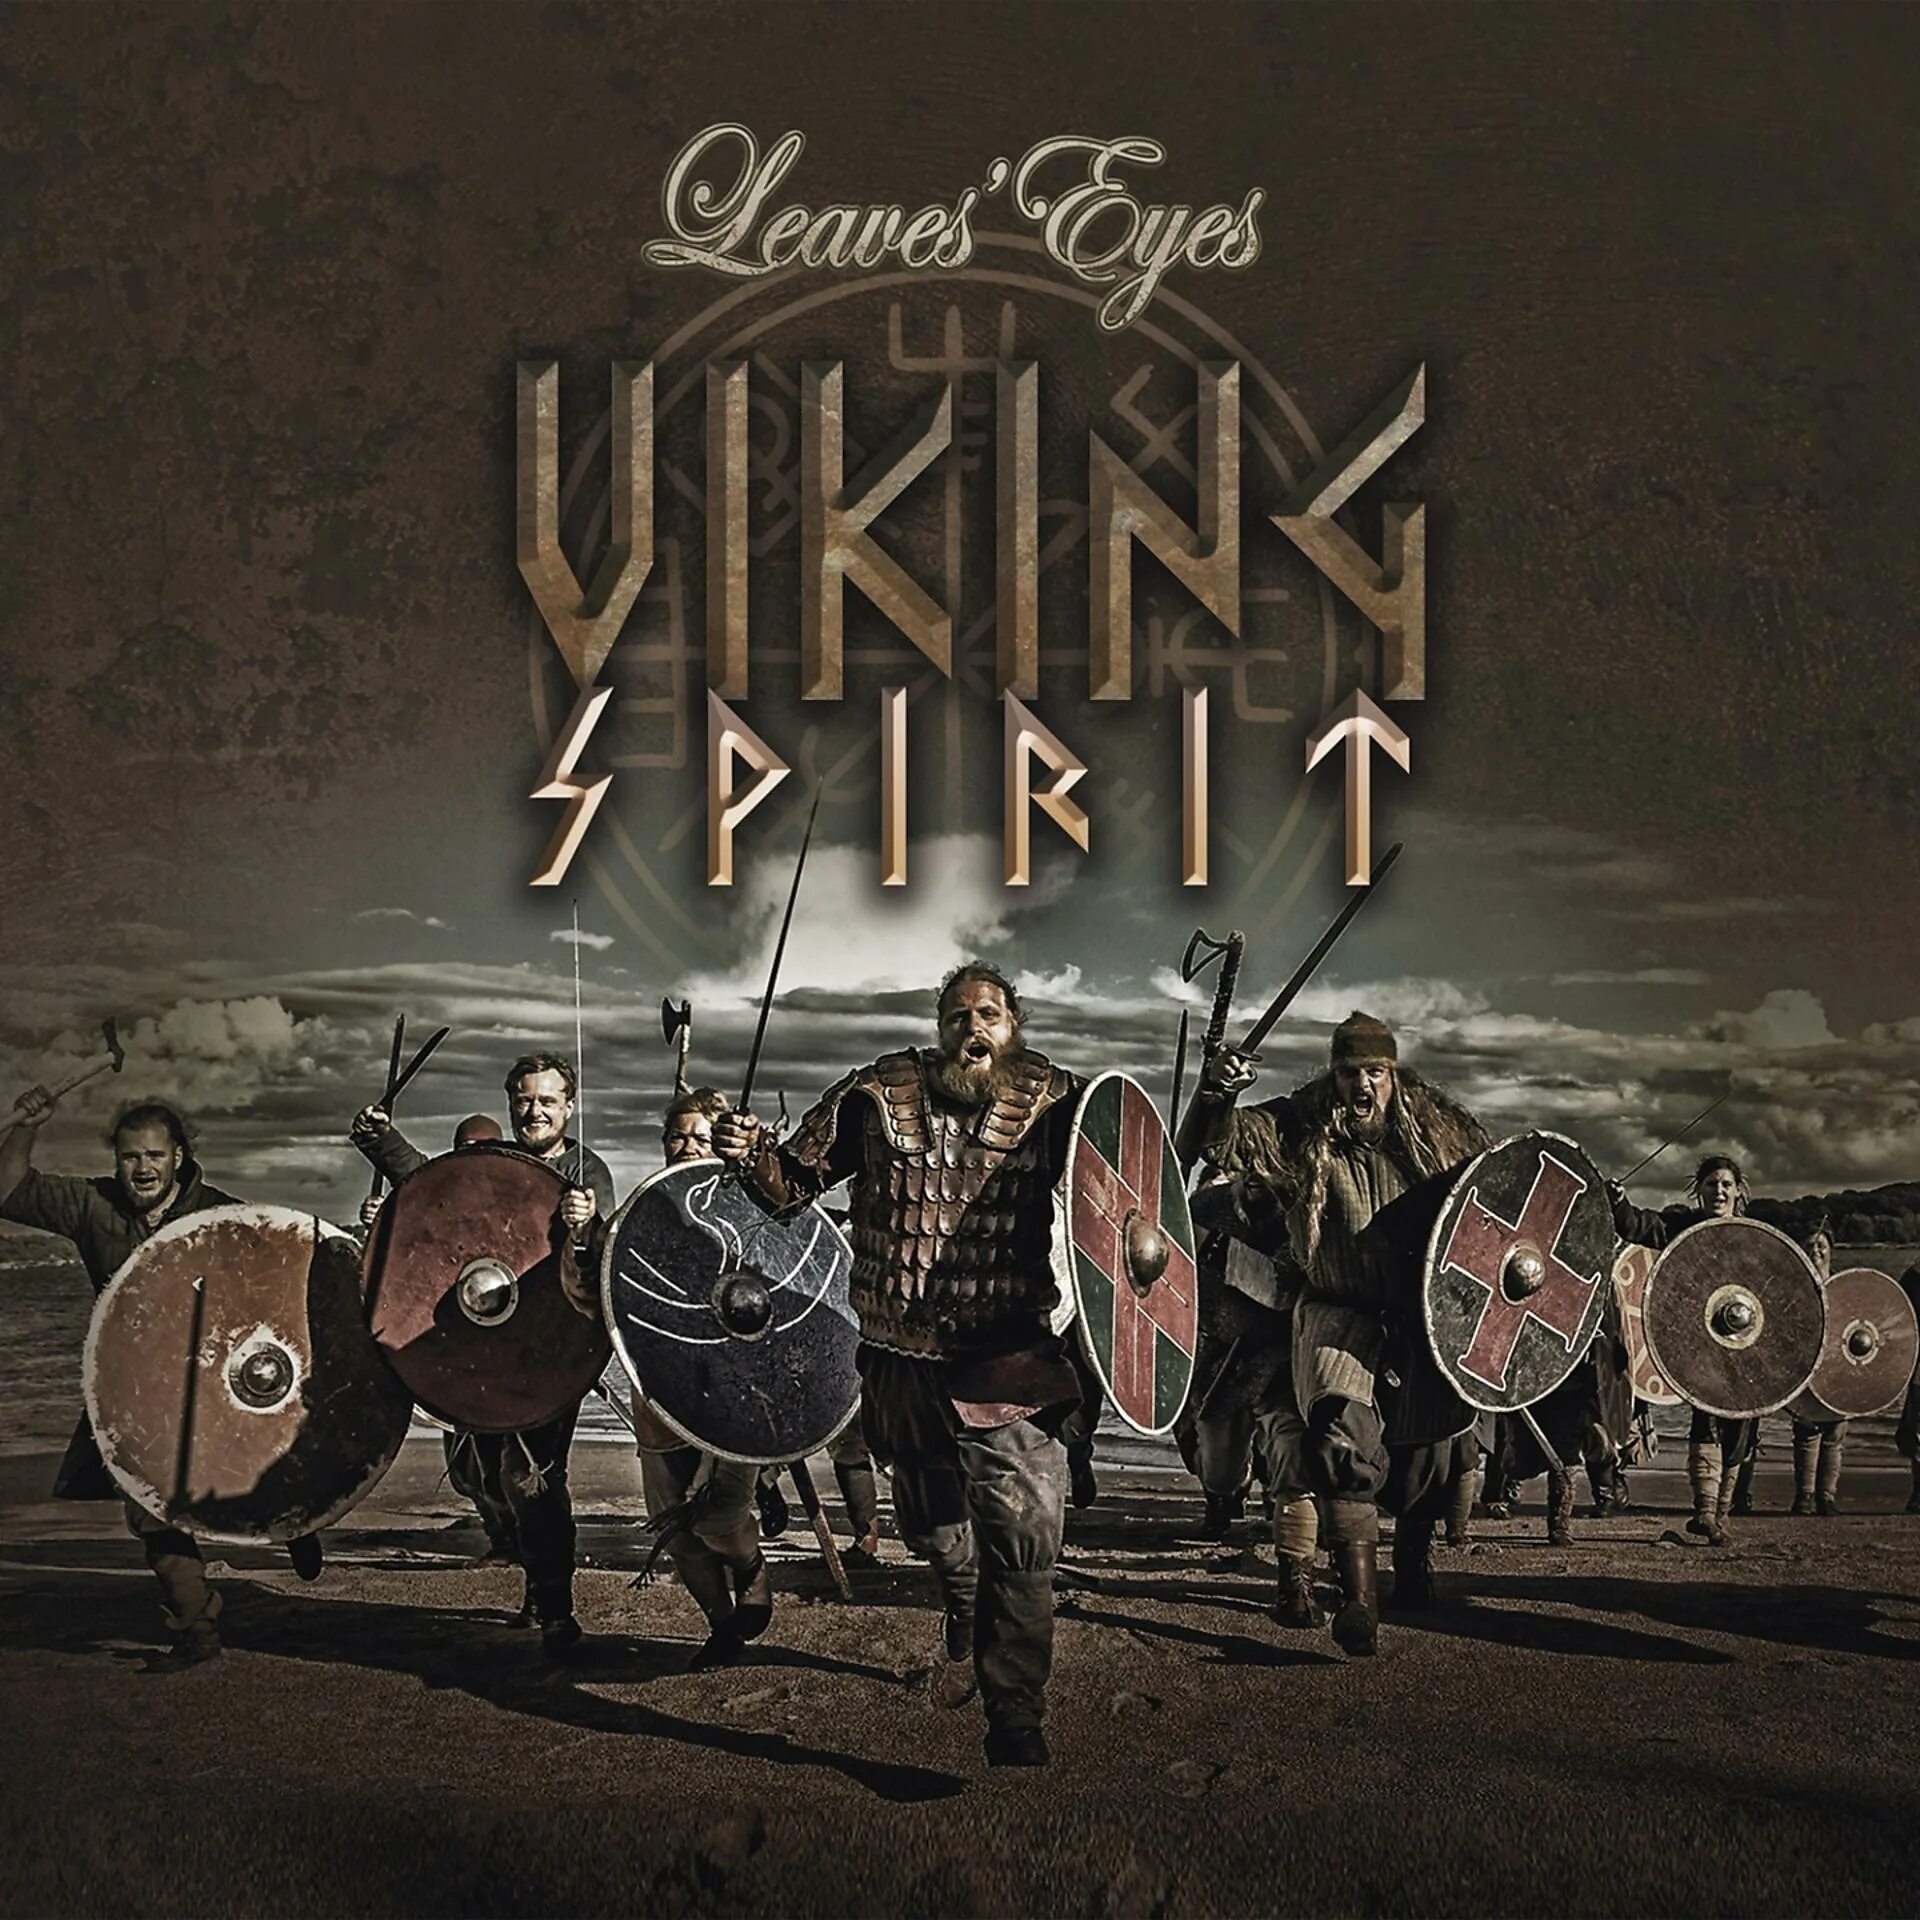 Альбом Викинги. Группа leaves’ Eyes. Viking Spirit. Leaves' Eyes альбомы.